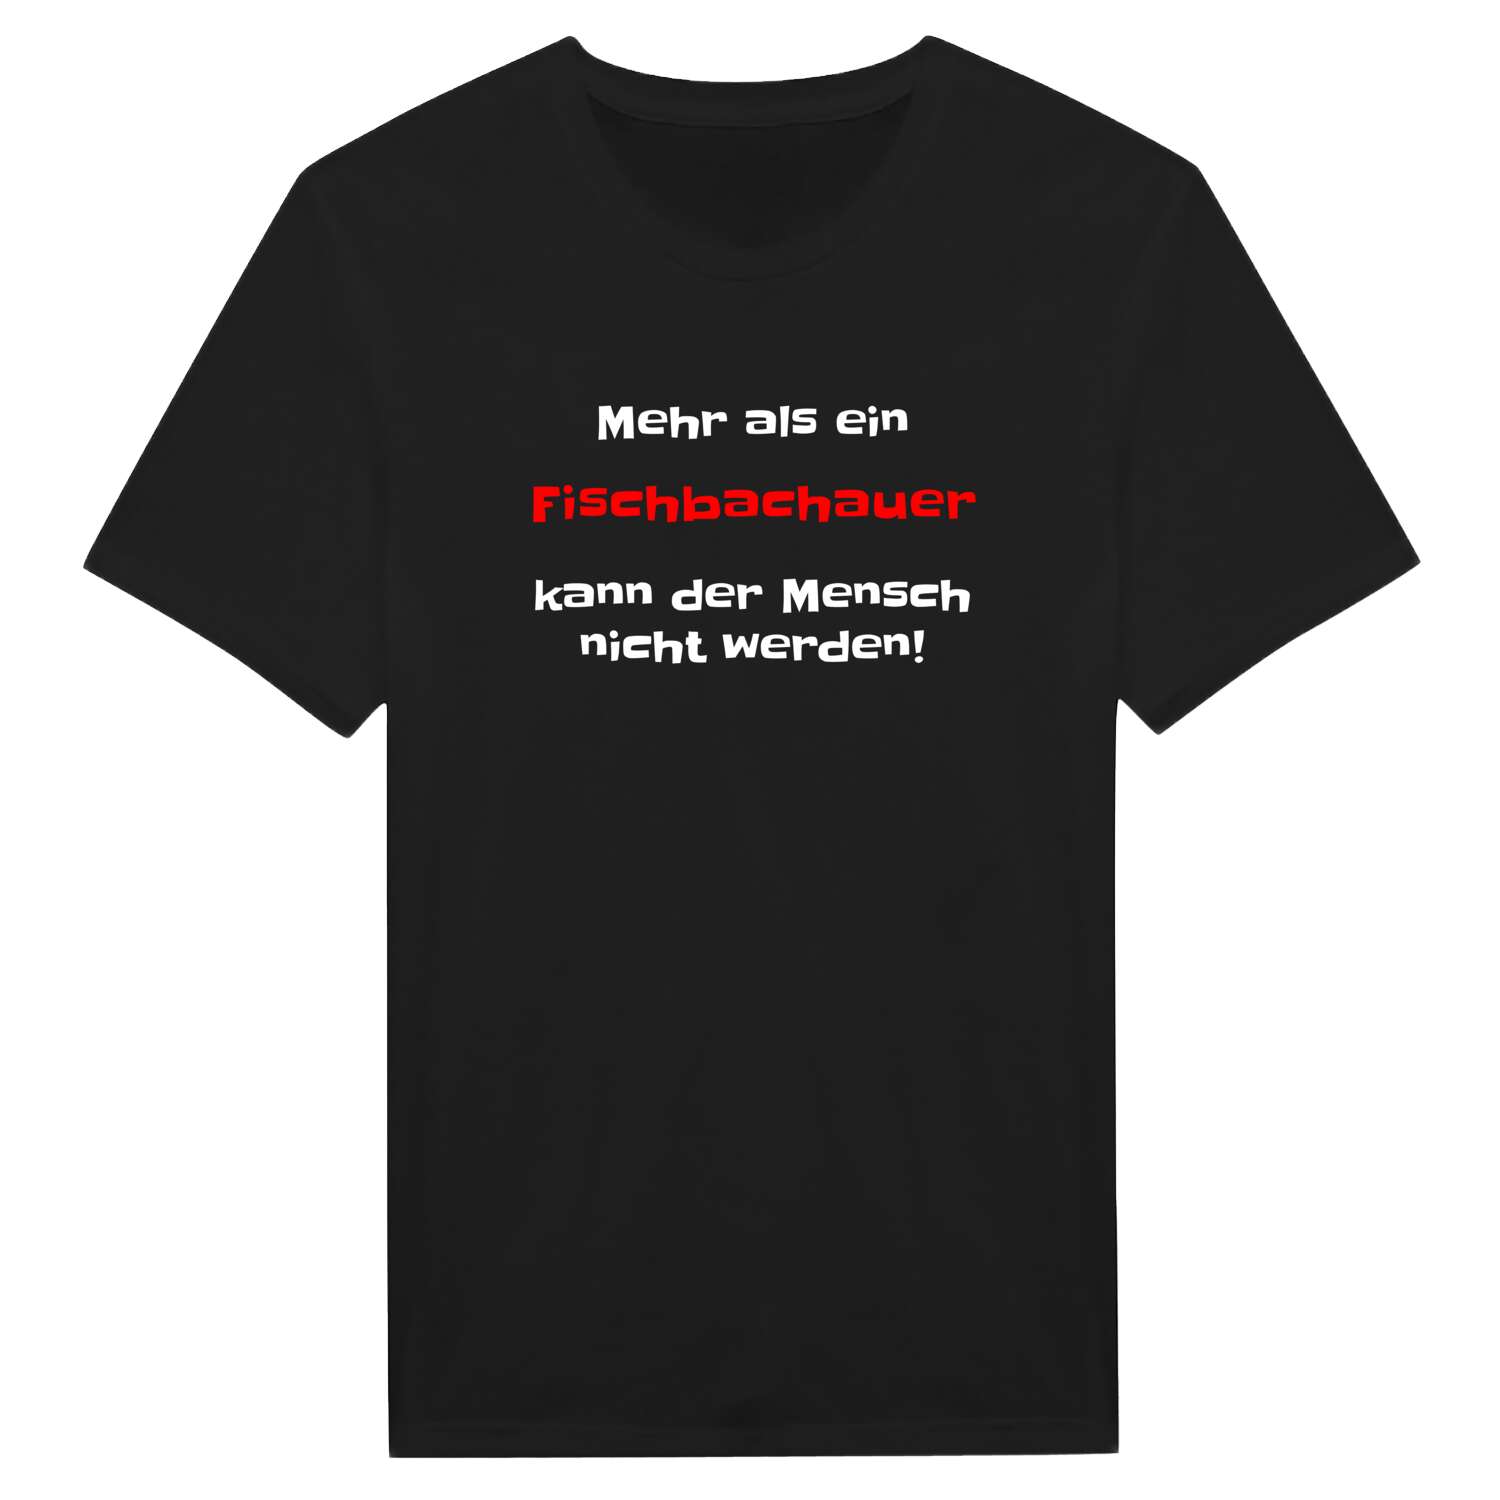 Fischbachau T-Shirt »Mehr als ein«